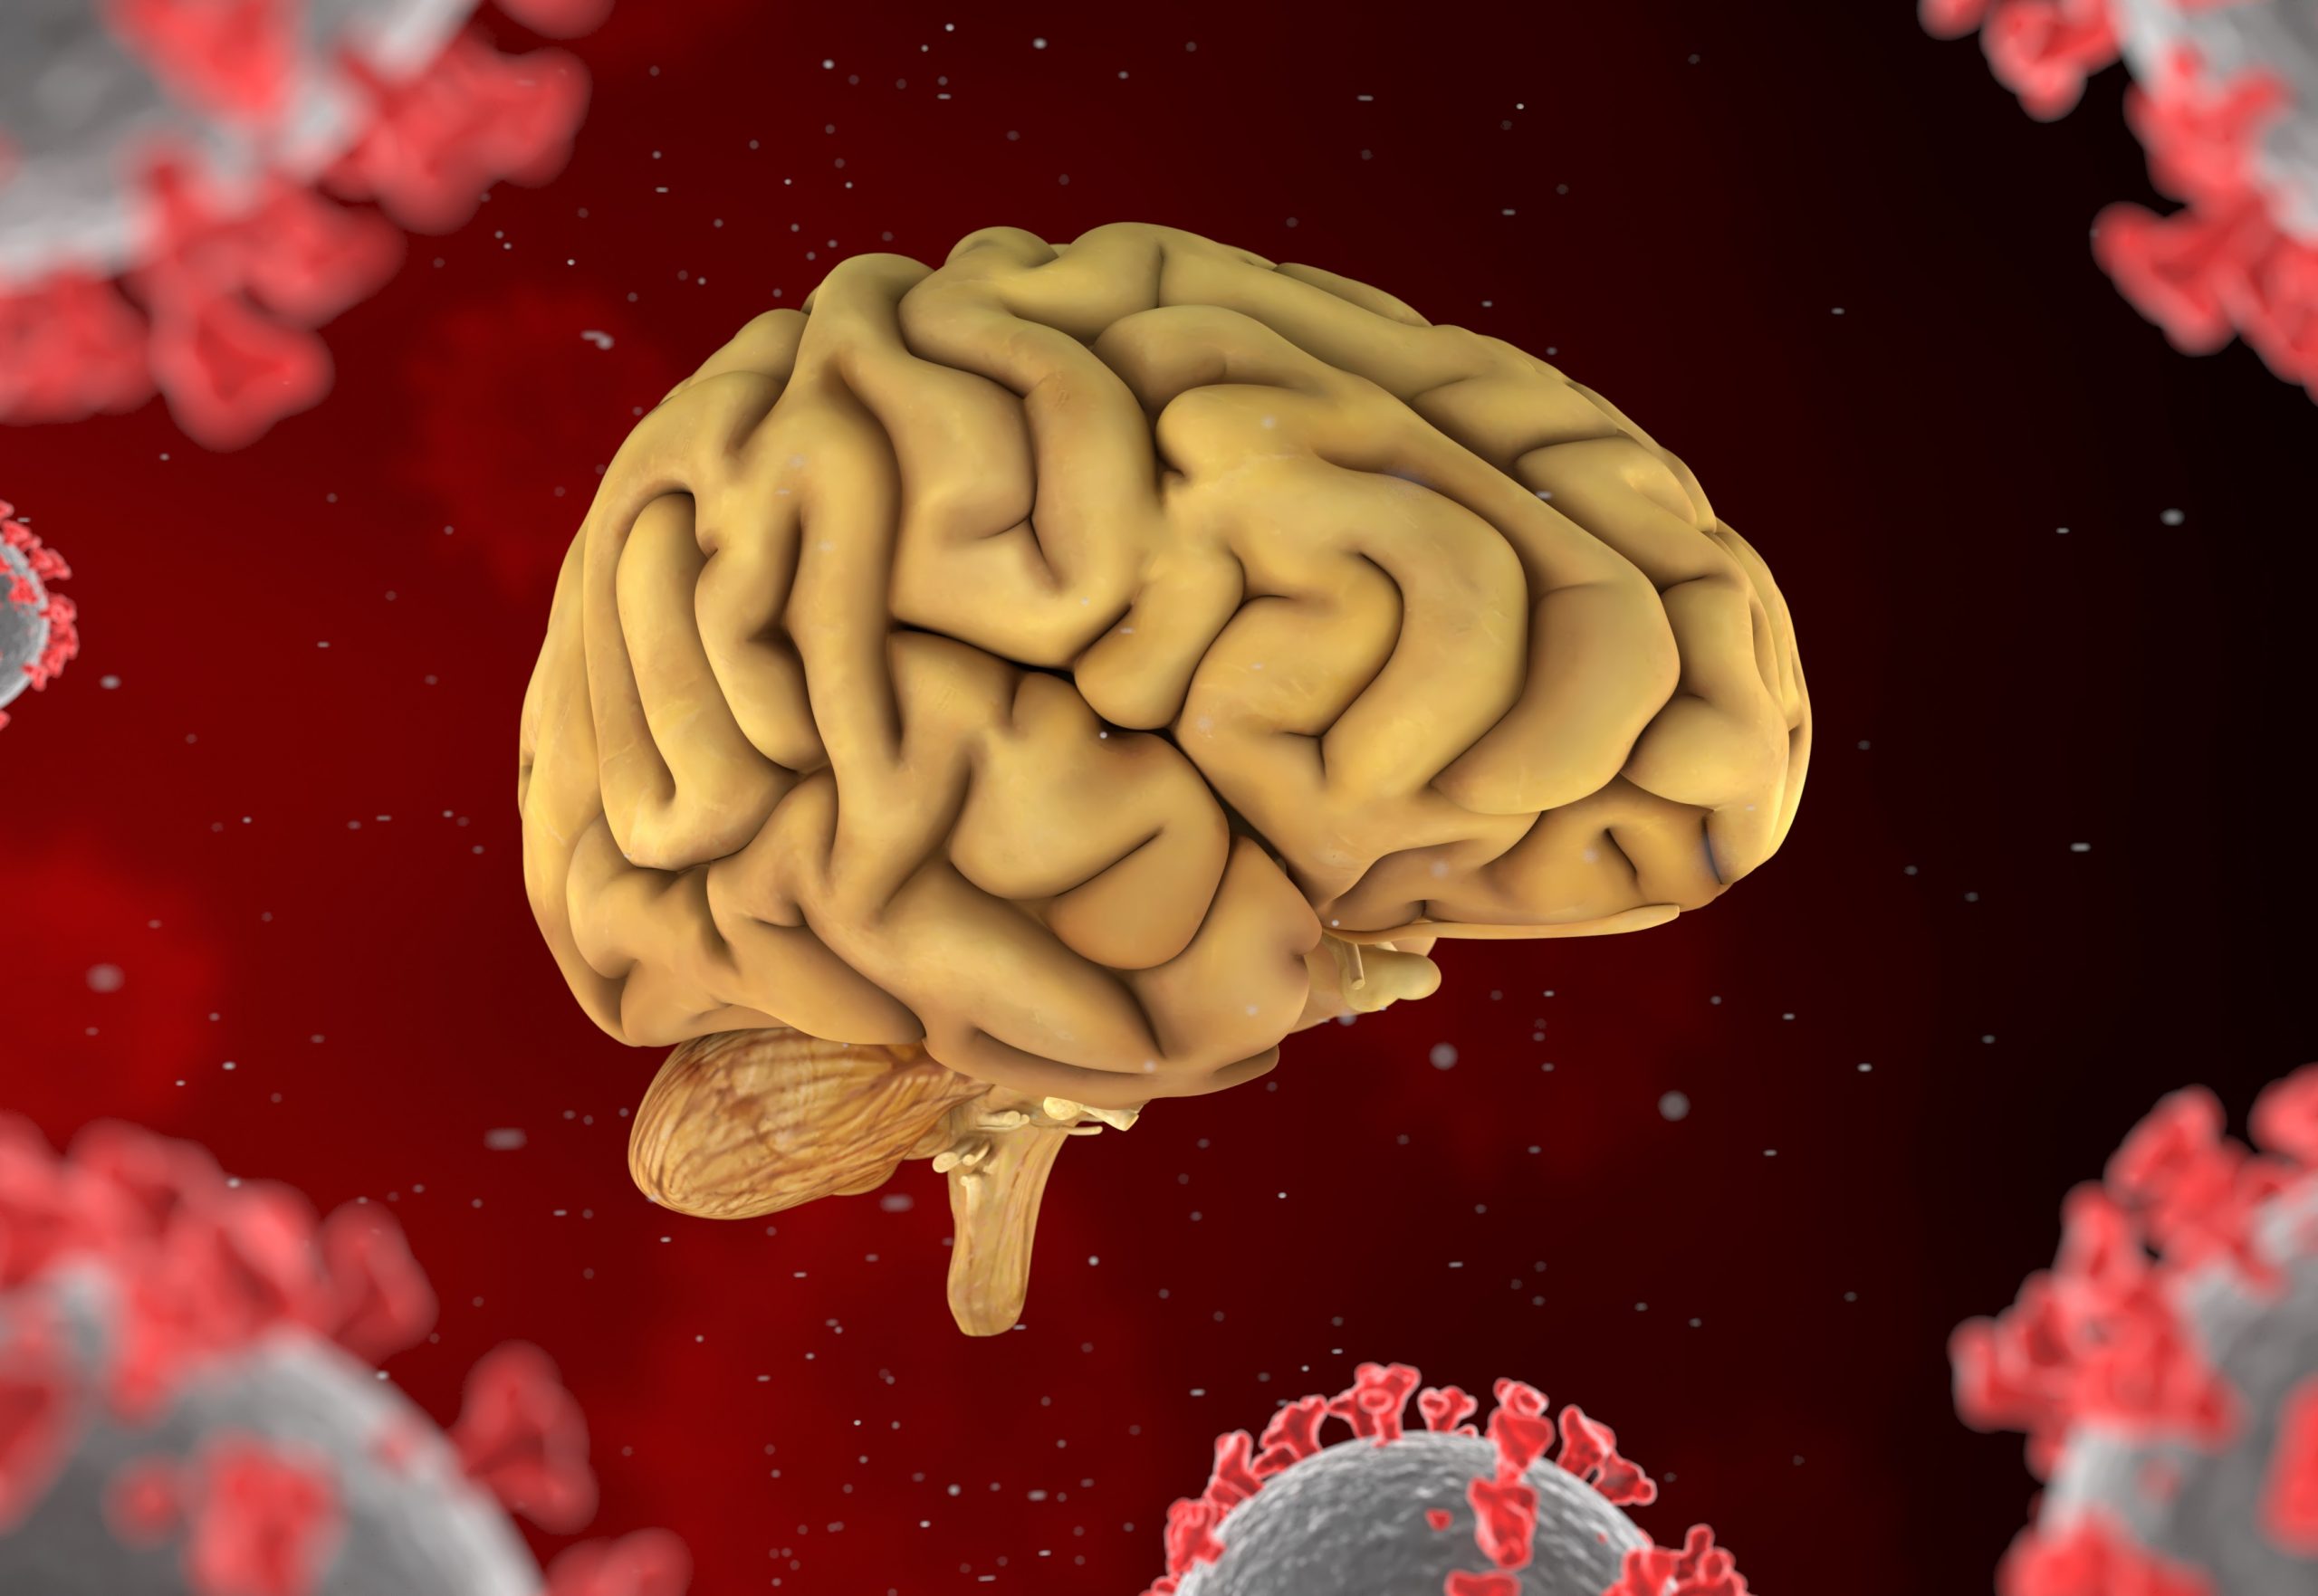 Νέα έρευνα δείχνει πως ο κορωνοϊός προκαλεί δομικές αλλαγές στον εγκέφαλο και μειώνει τη φαιά ουσία